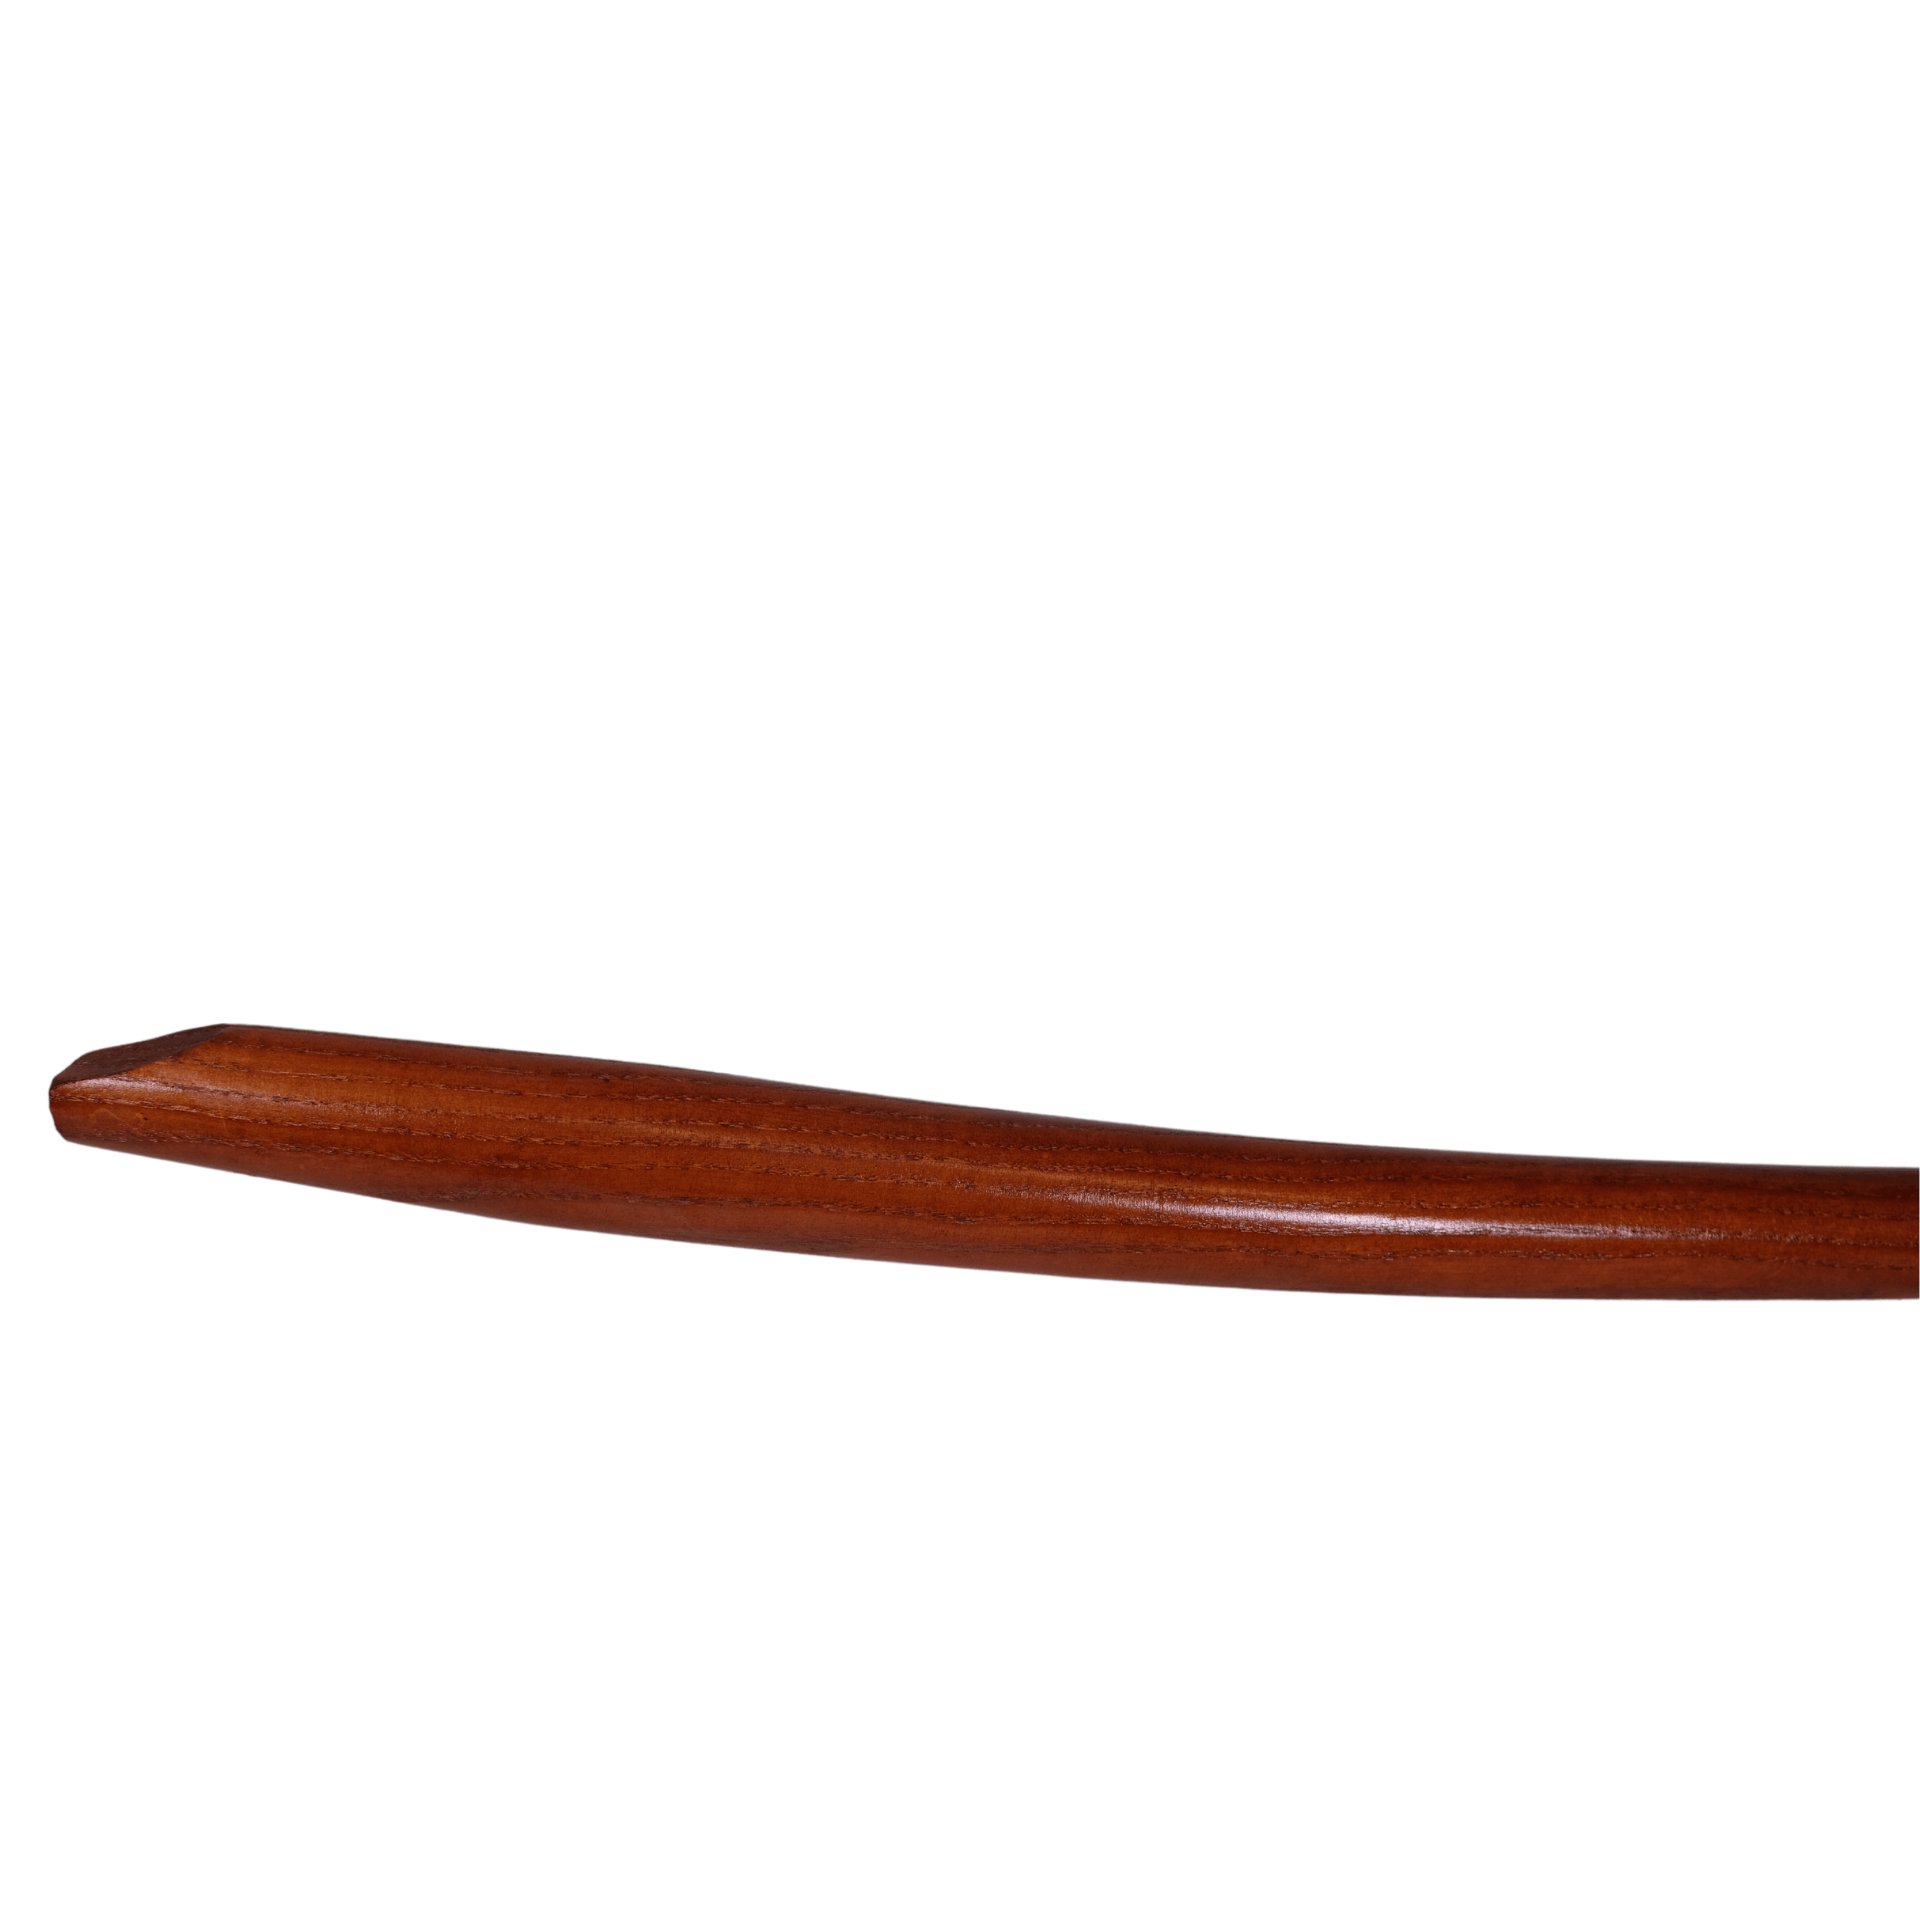 SHW Rex Ersatzstiel Esche für Schaufel 130 cm lang